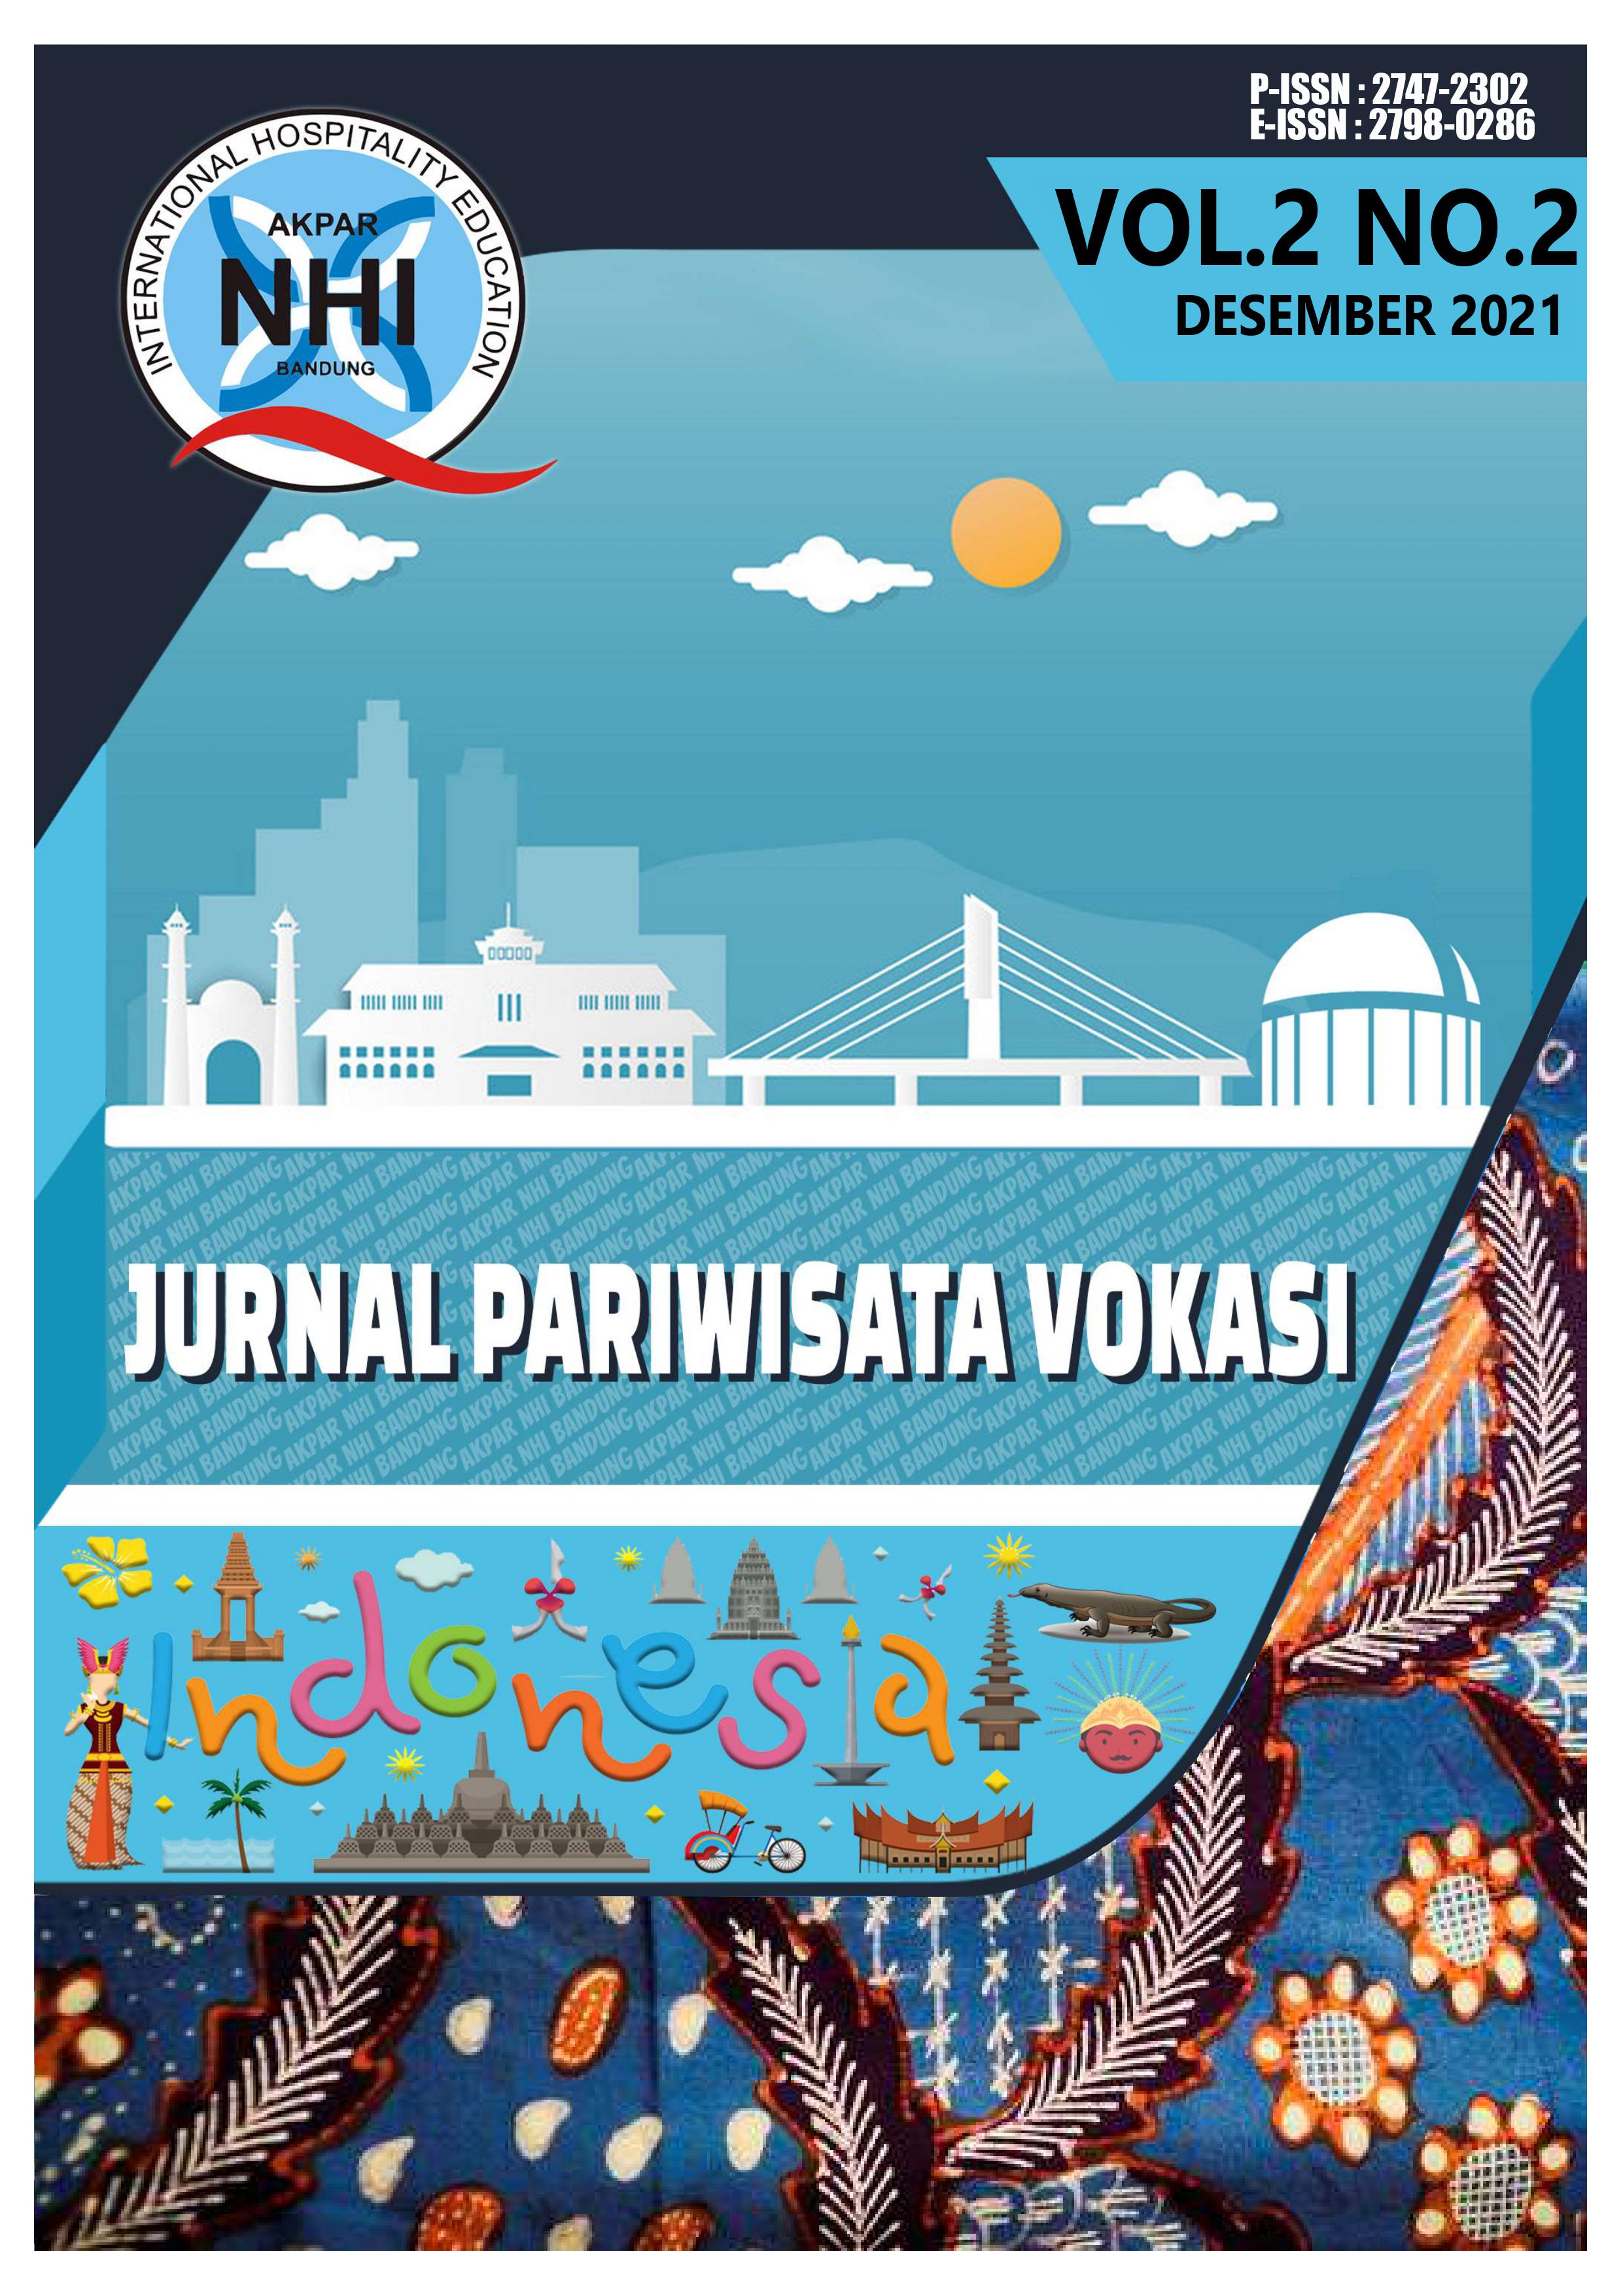 					Lihat Vol 2 No 2 (2021): Jurnal Pariwisata Vokasi
				